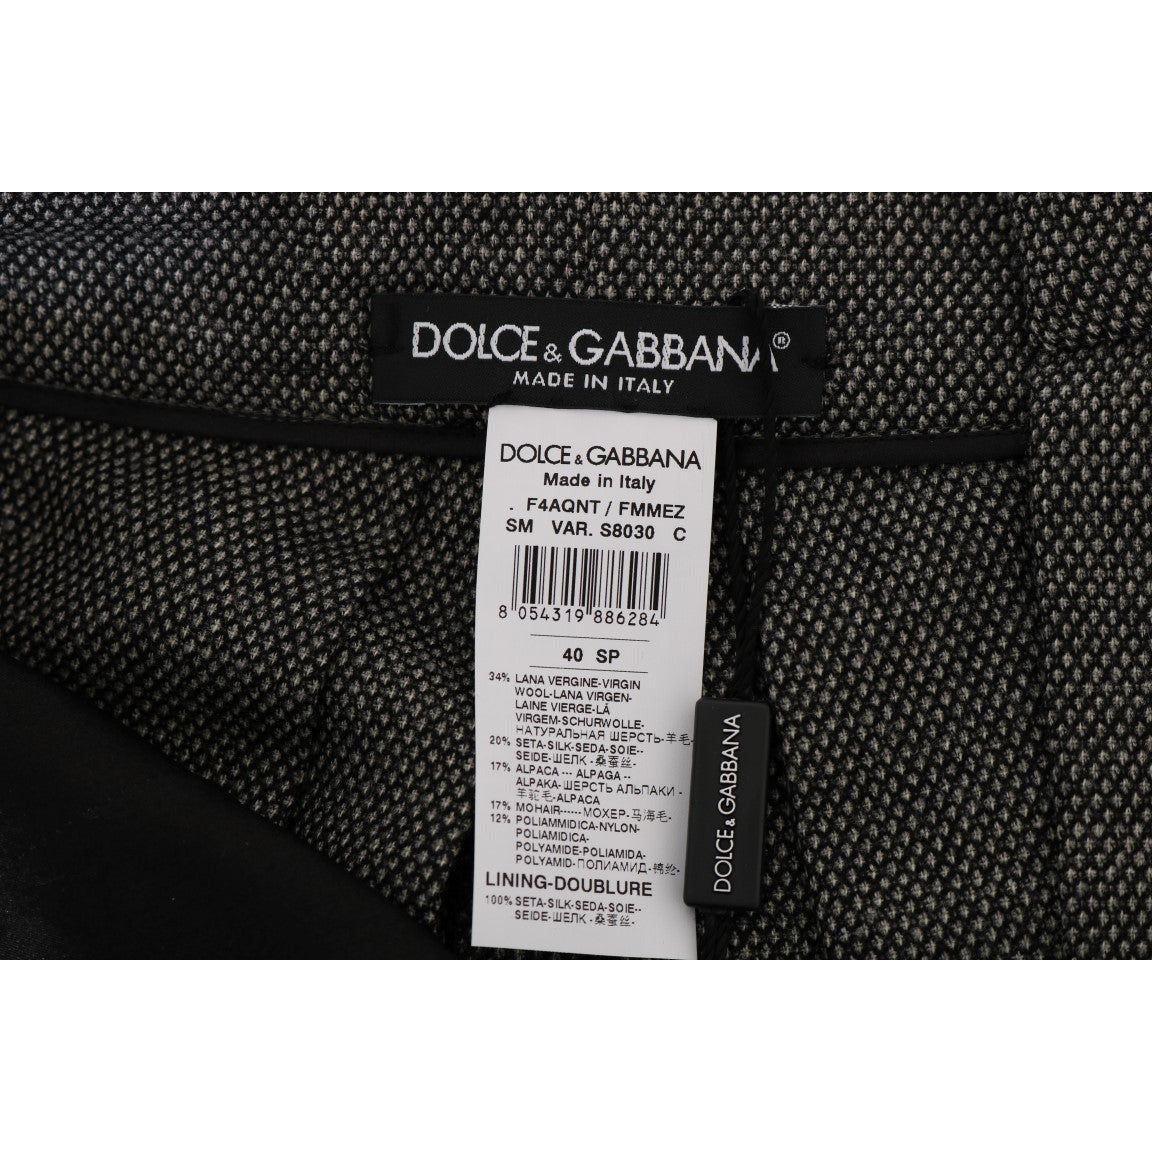 Dolce & Gabbana Chic High Waist Wool Mini Shorts gray-wool-high-waist-mini-shorts 466960-gray-wool-high-waist-mini-shorts-5.jpg